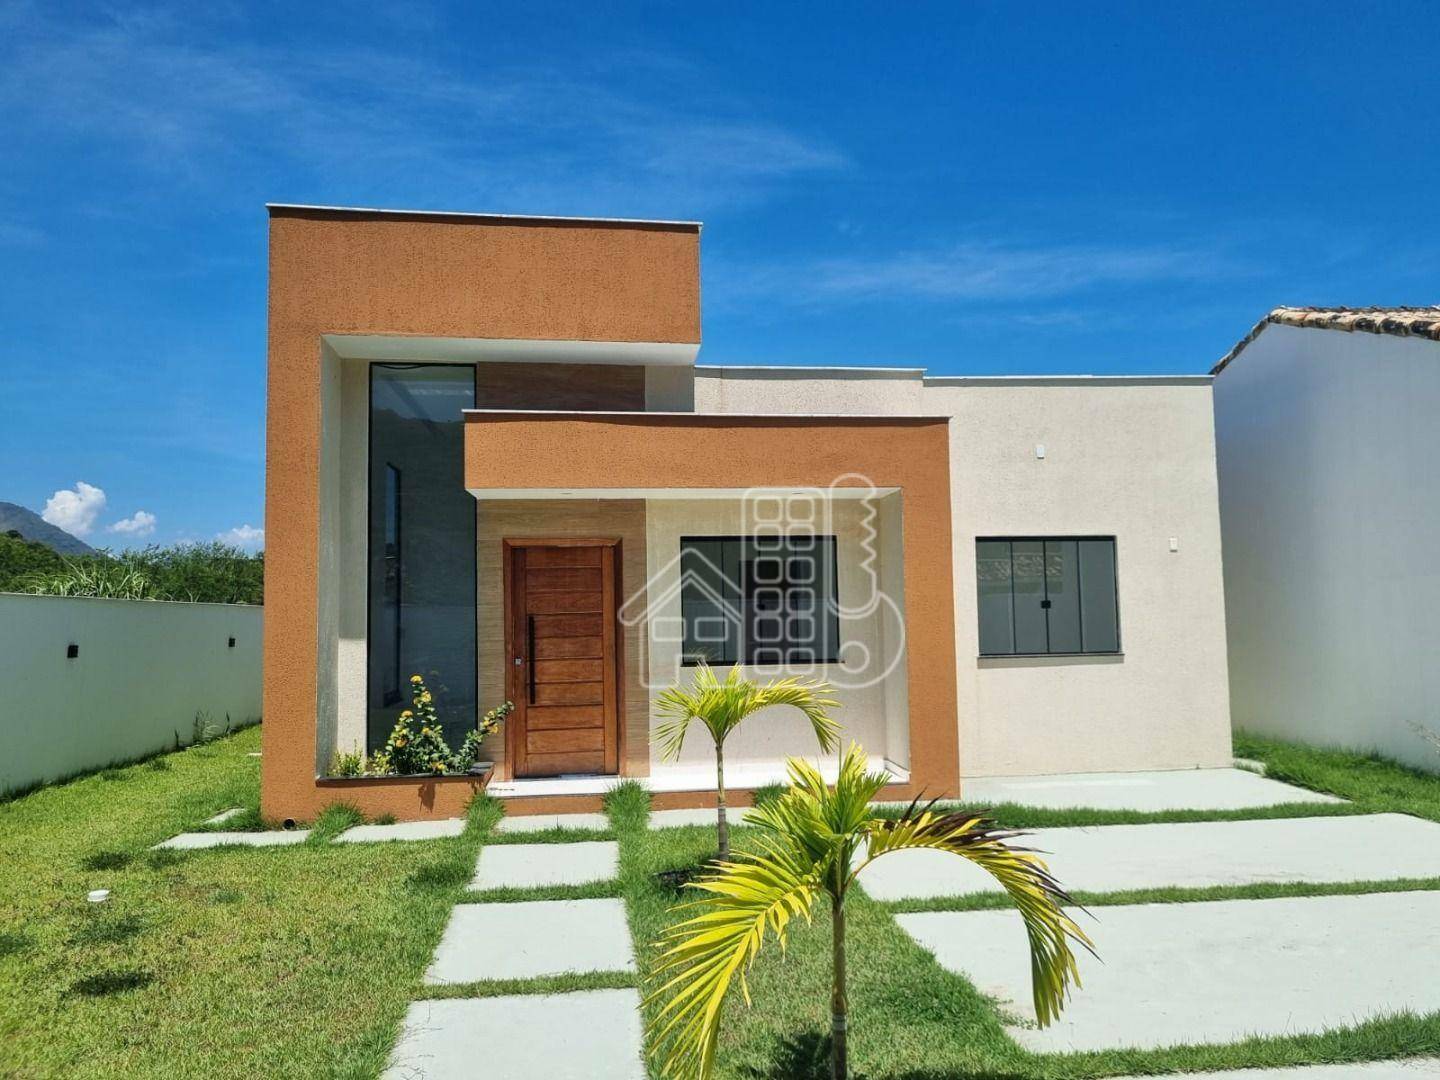 Casa com 3 dormitórios à venda, 130 m² por R$ 790.000,01 - Itaipuaçu - Maricá/RJ